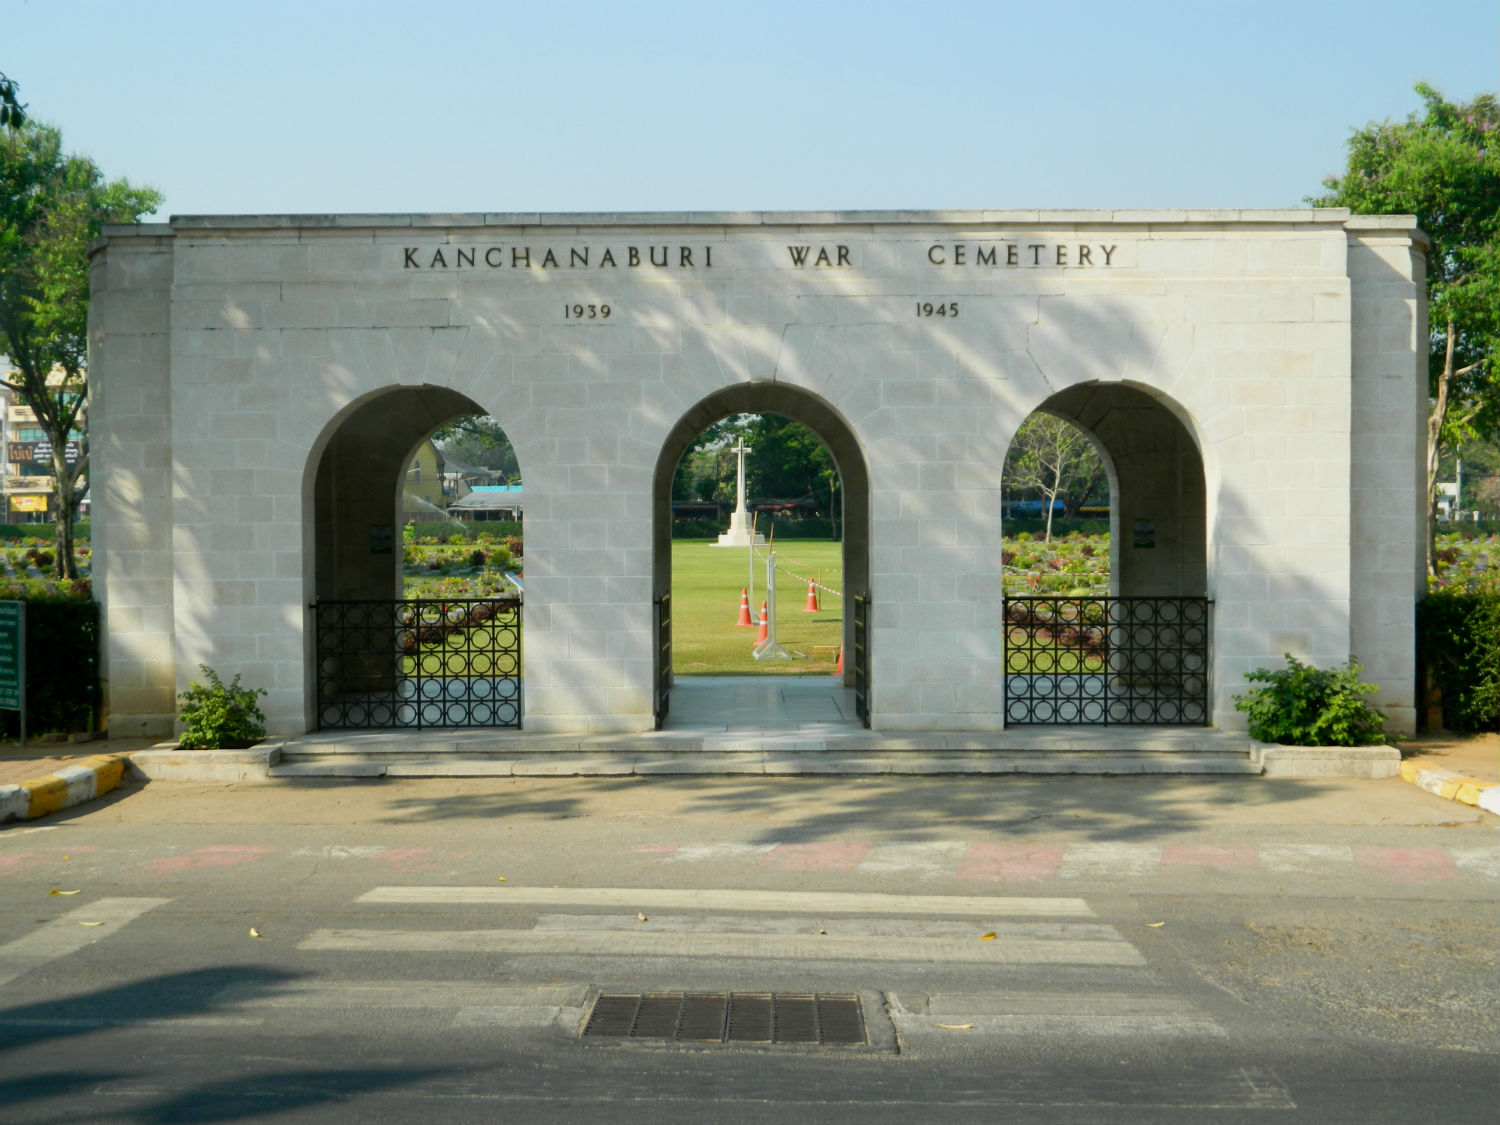 Kanchanaburi (Don Rak) War Cemetery, Kanchanaburi